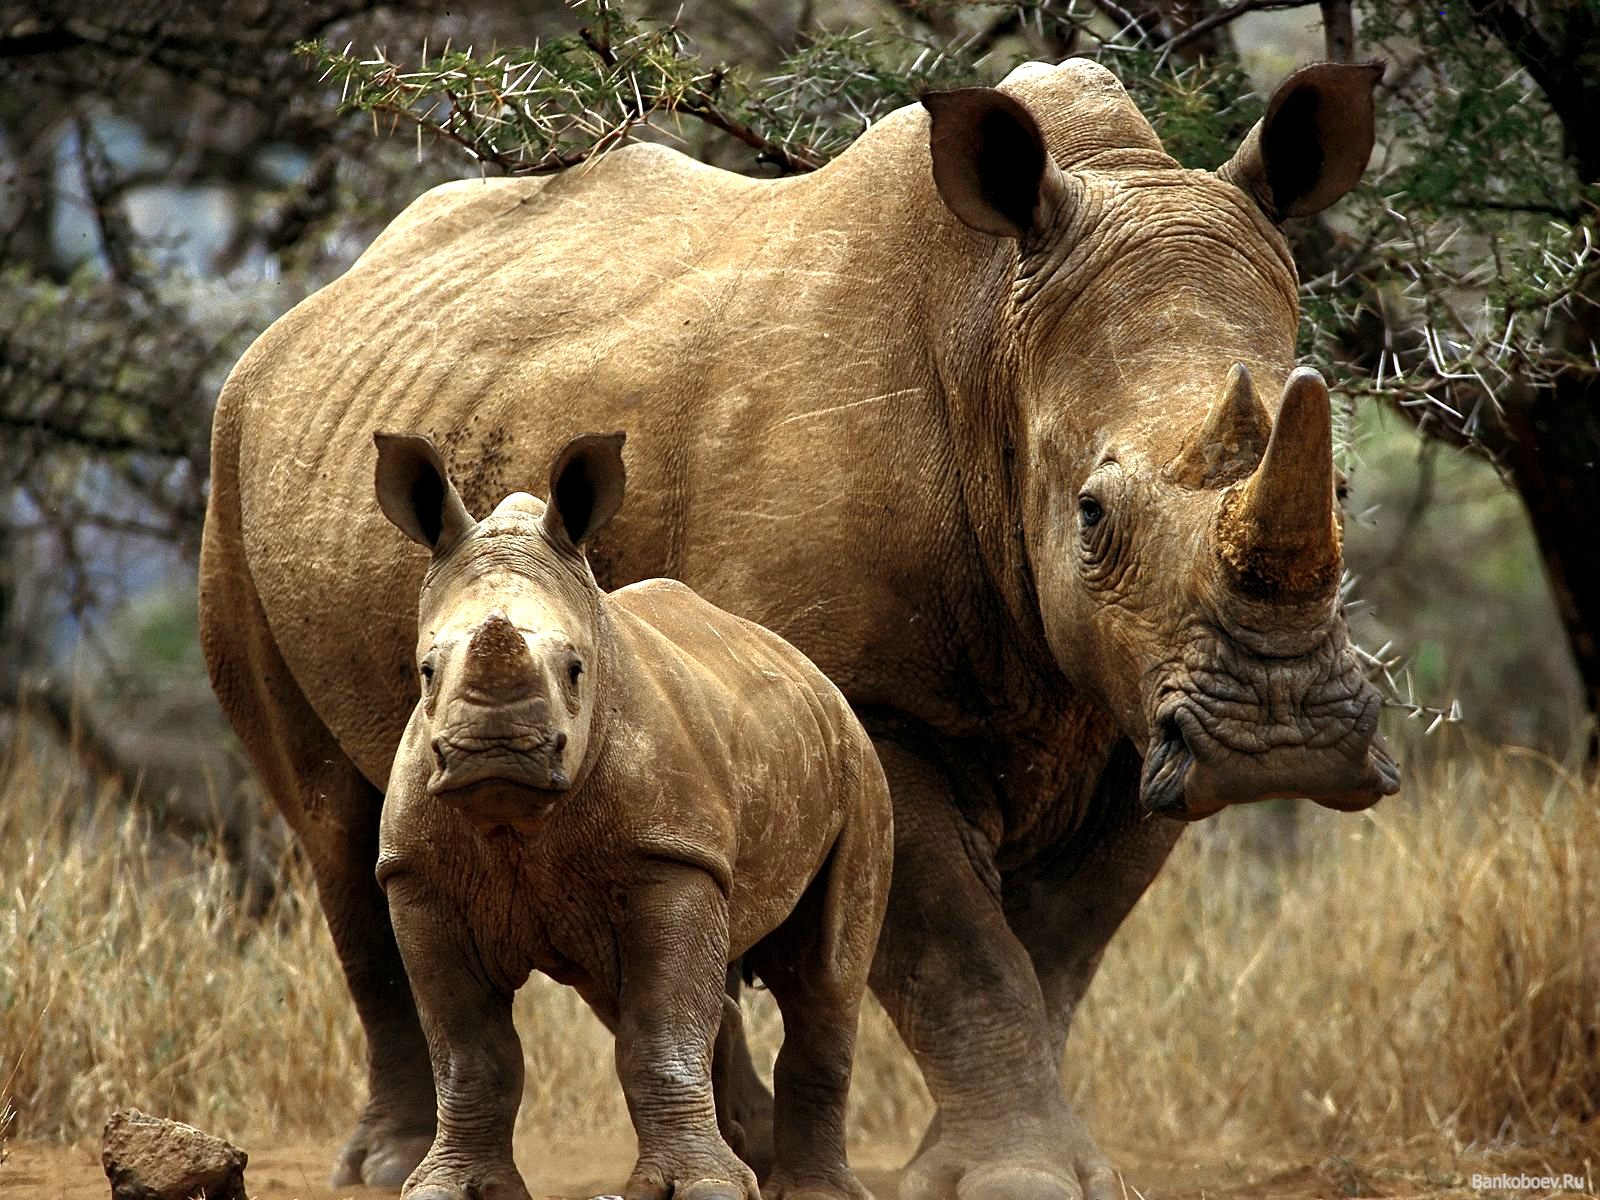 Mom rhino with a cub